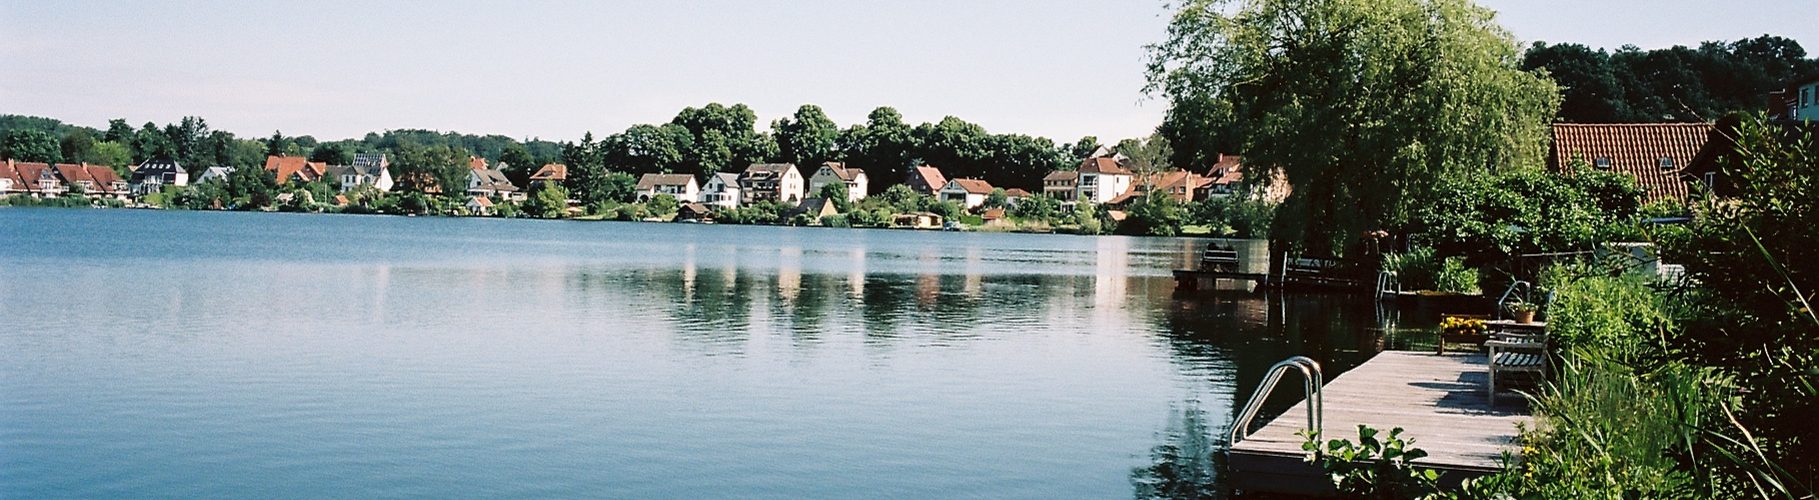 Ziegelsee Mölln – Seen in Schleswig-Holstein, aufgenommen mit Leica M Summilux 1.4/50mm asph new auf Kodak Portra 160 | © weites.land